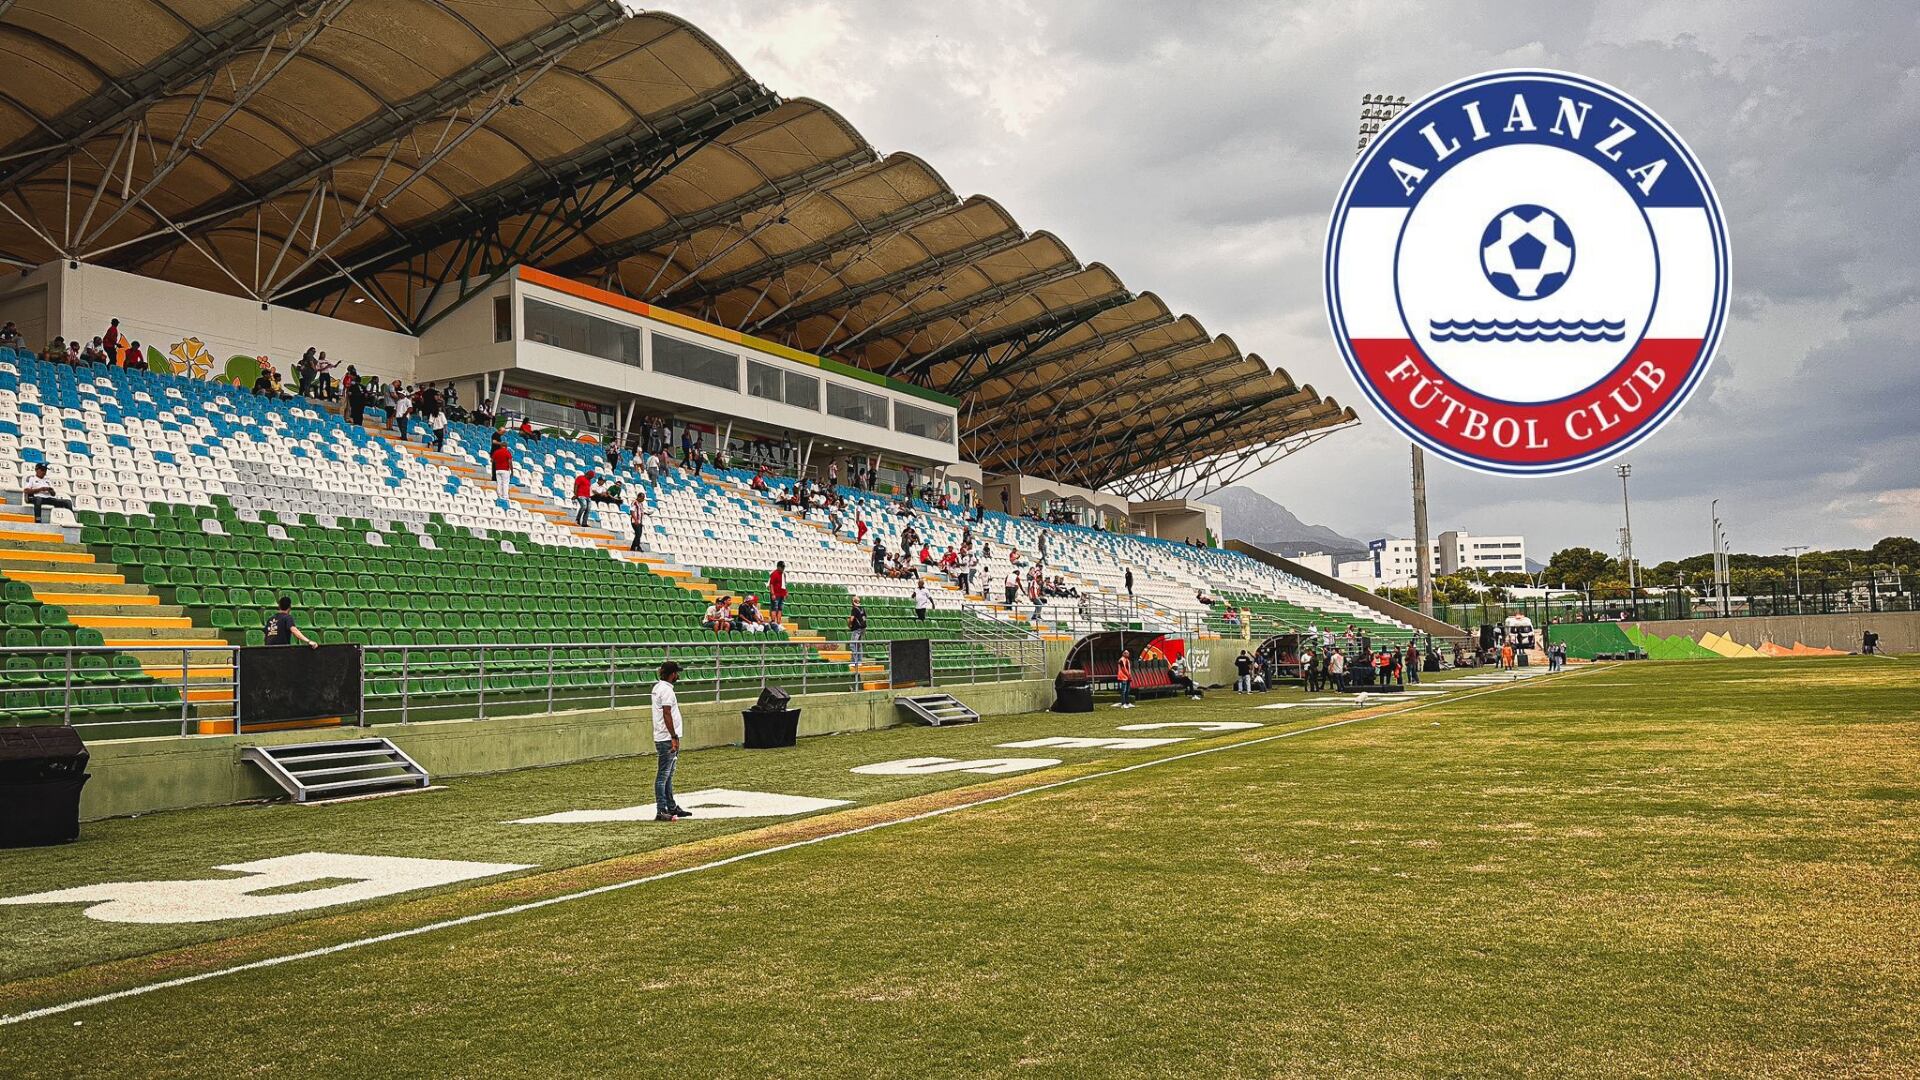 El estadio Armando Maestre recibió el aval de la Conmebol para poder albergar juegos de la Copa Sudamericana allí - crédito @JuniorClubSA/X